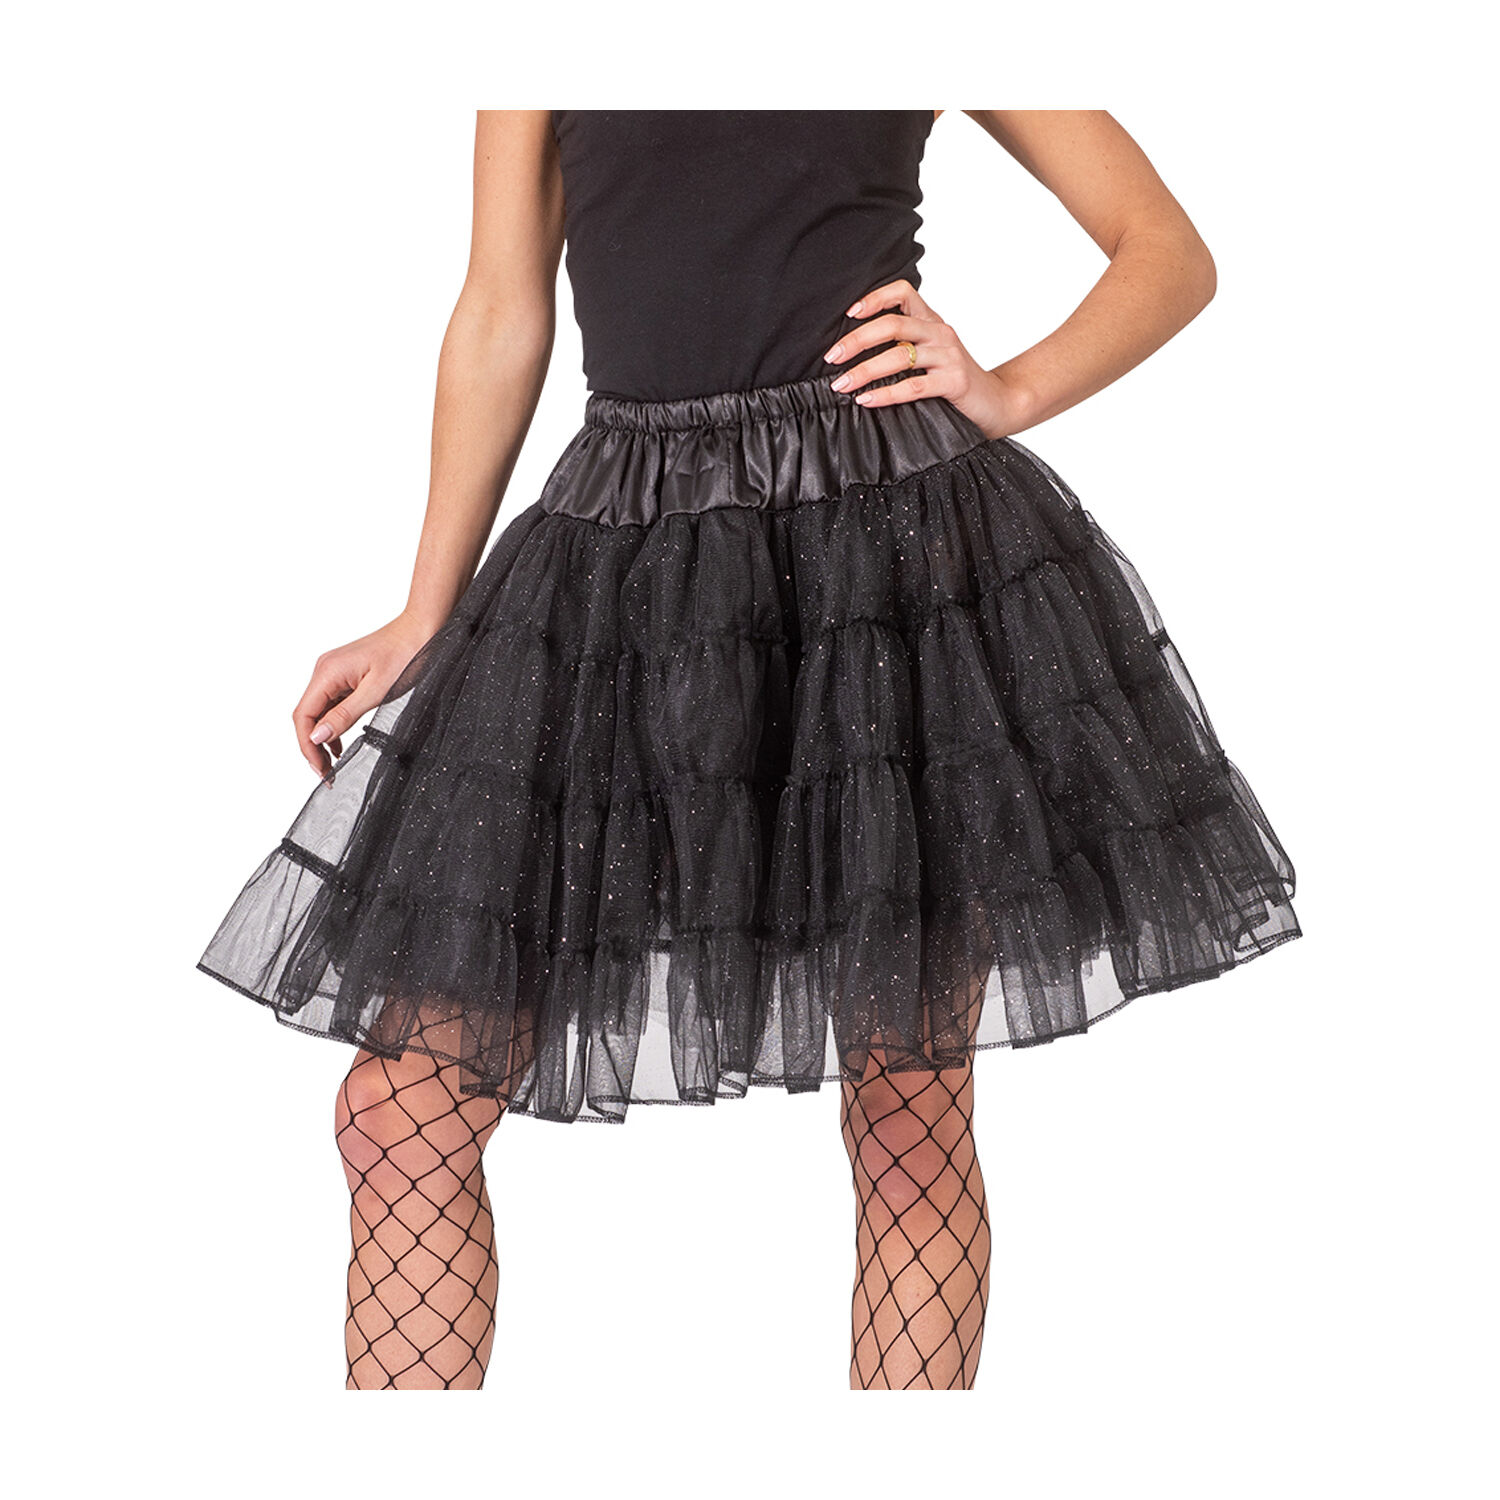 NEU Damen-Kostm Petticoat, schwarz mit Glitzer, Einheitsgre Bild 2